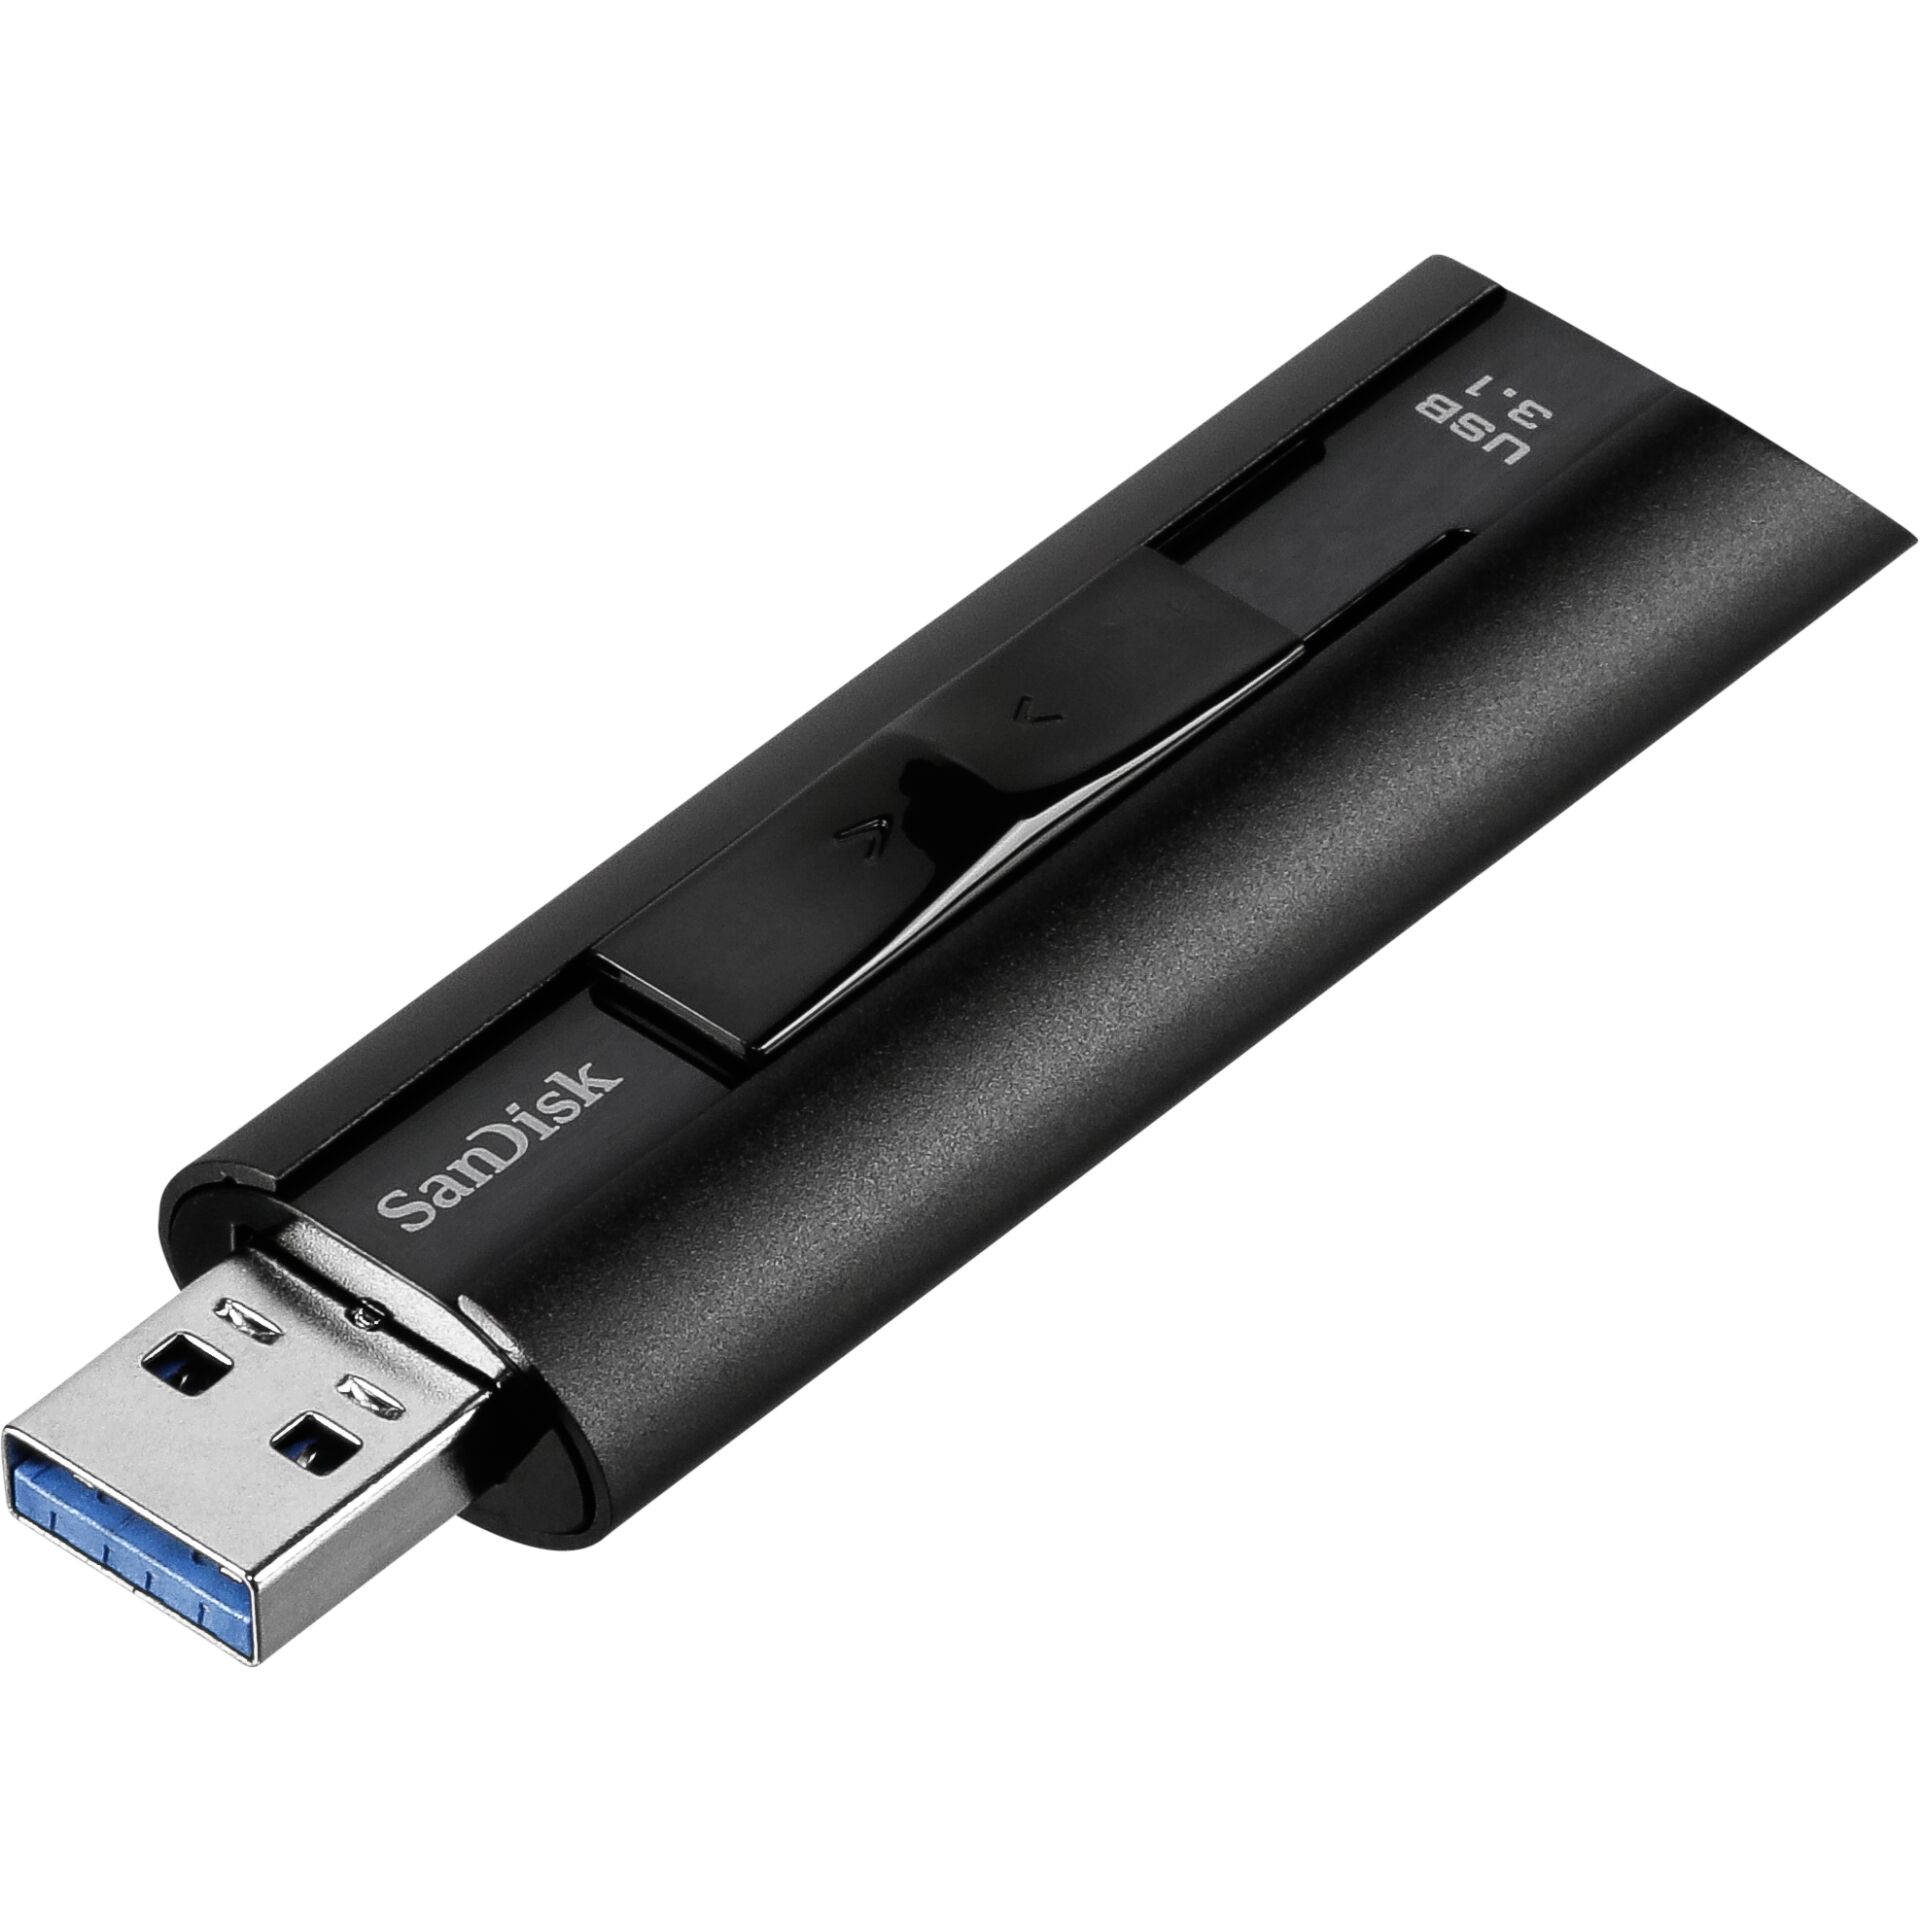 128 GB SanDisk Extreme PRO USB 3.0 Stick schwarz lesen: 420MB/s, schreiben: 380MB/s